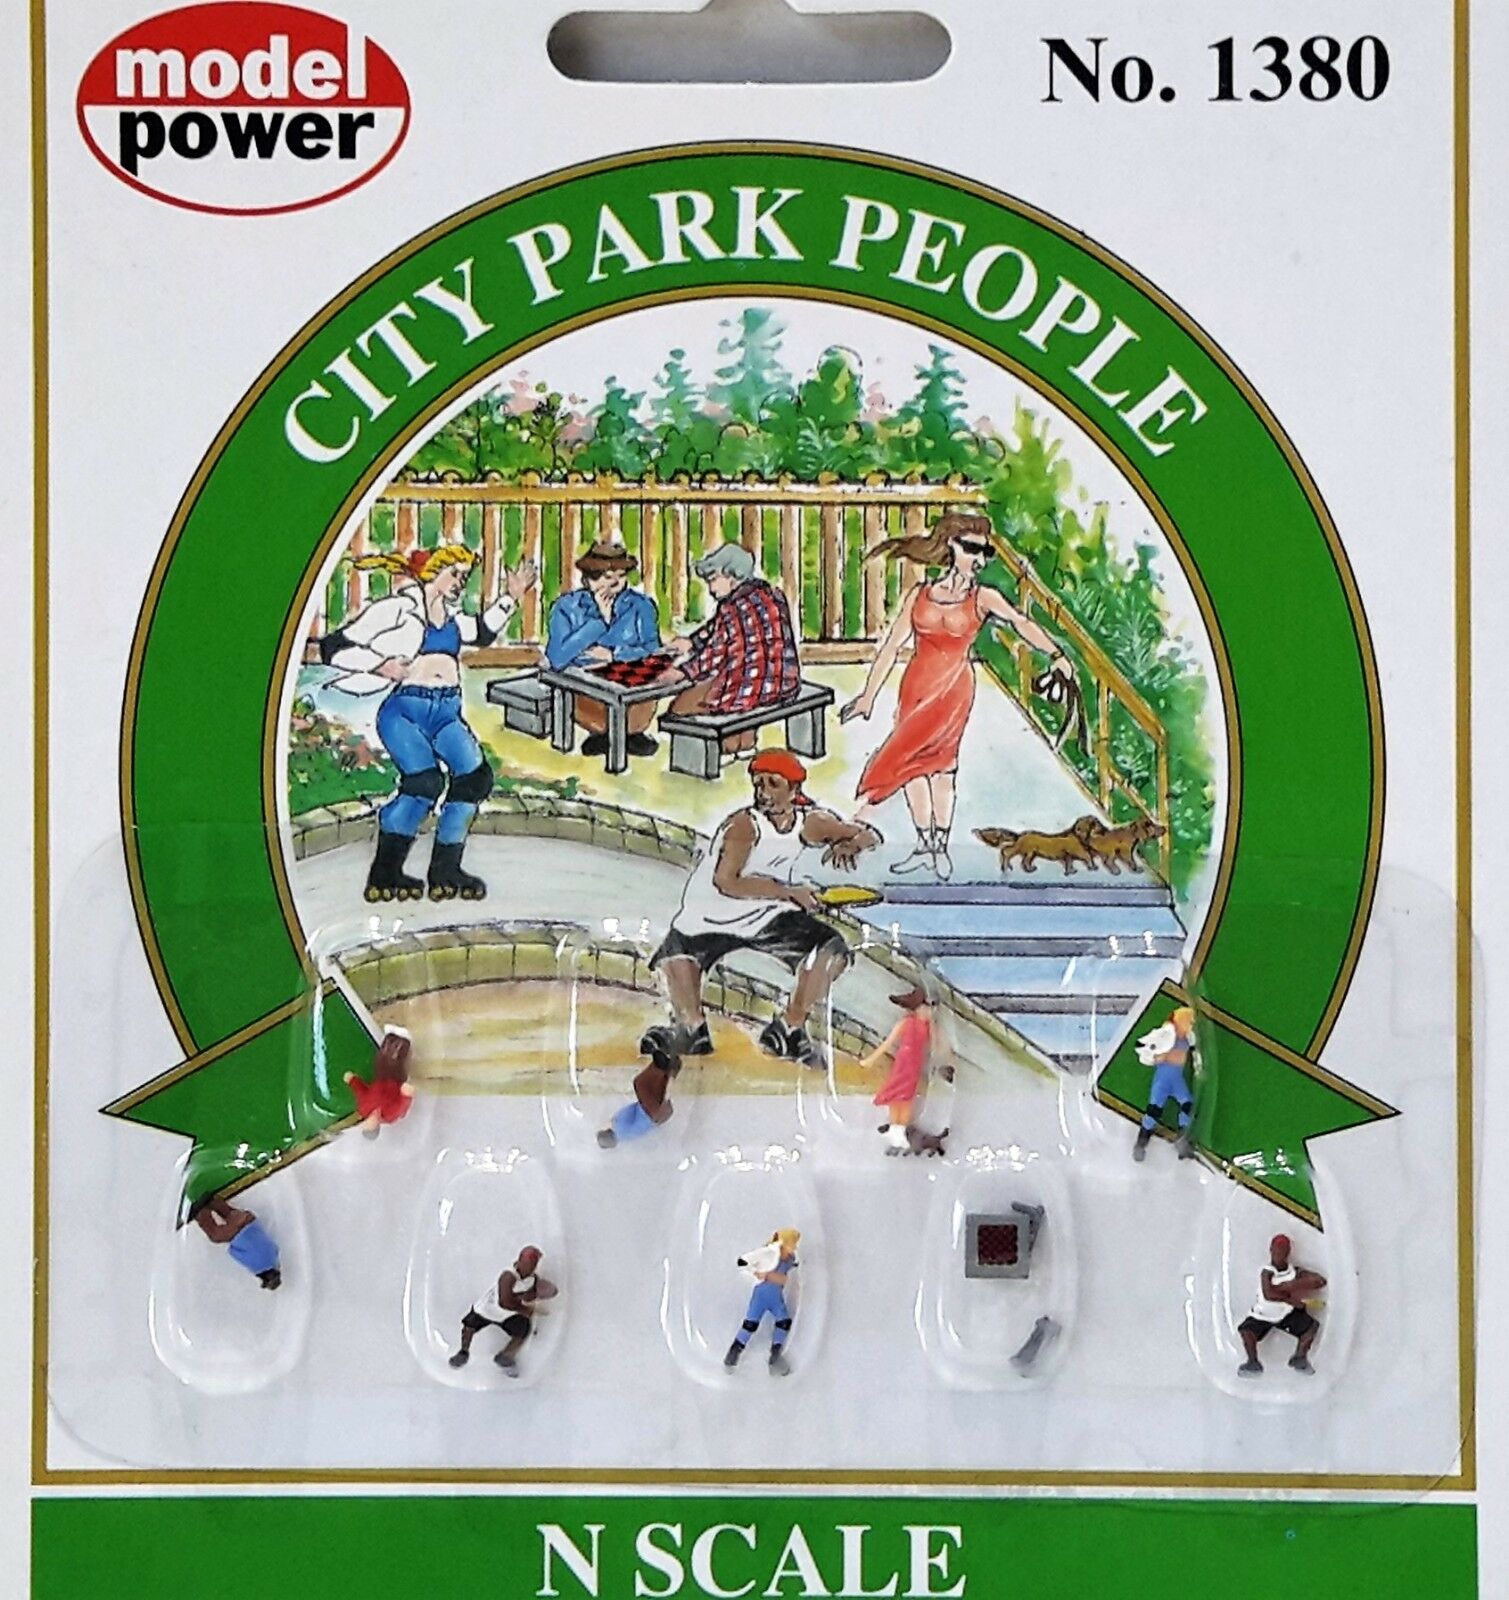 N Scale - Model Power - 1380 - City Park People - People